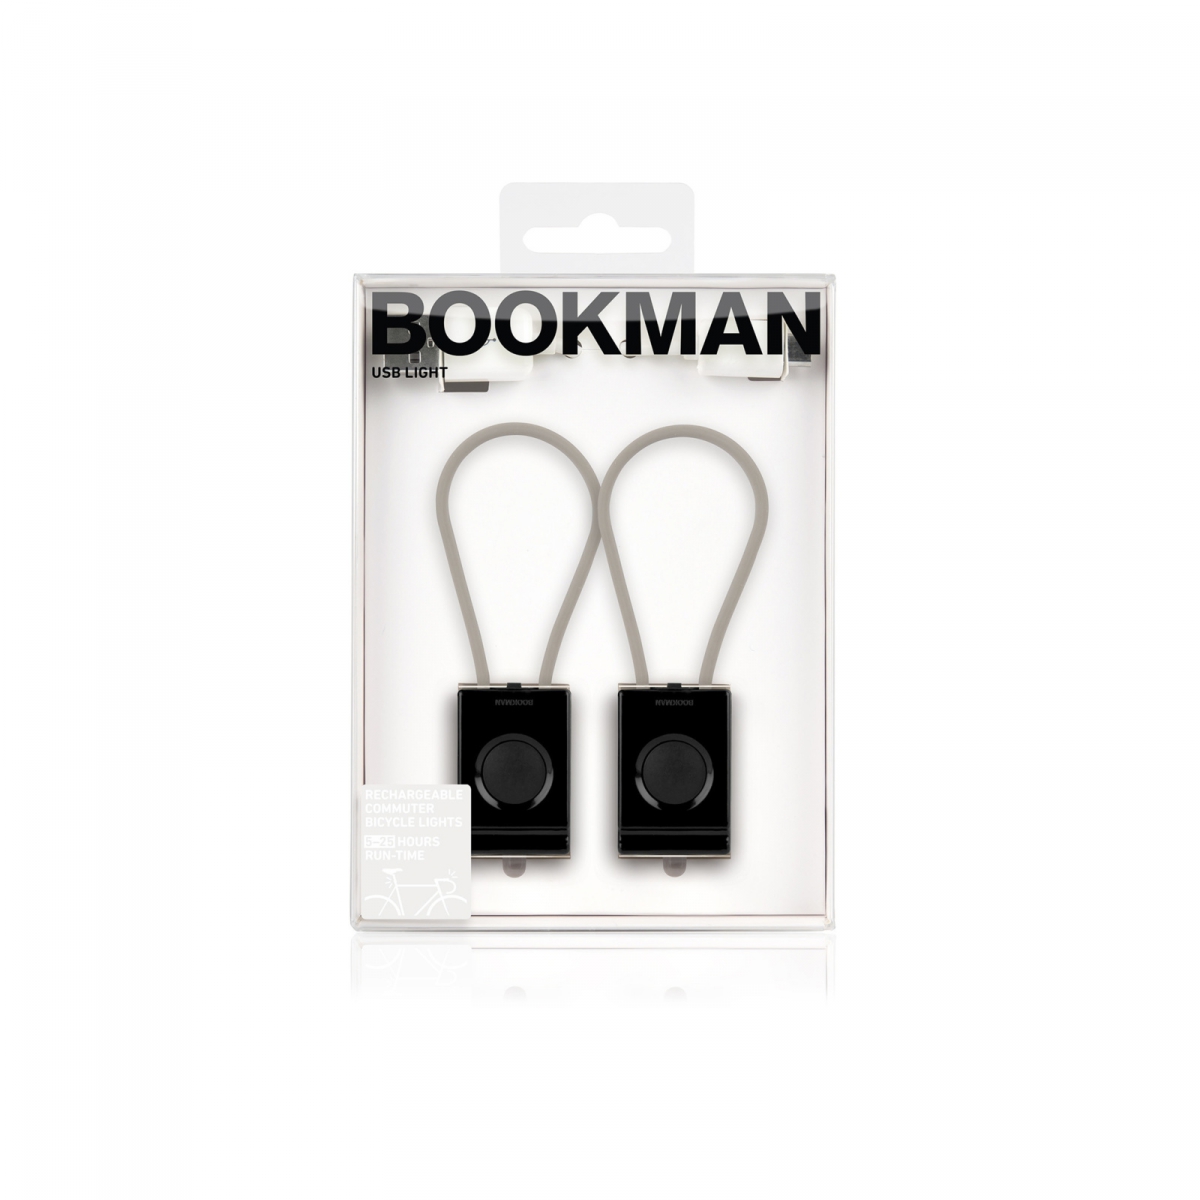 bookman-usb-sada.jpg